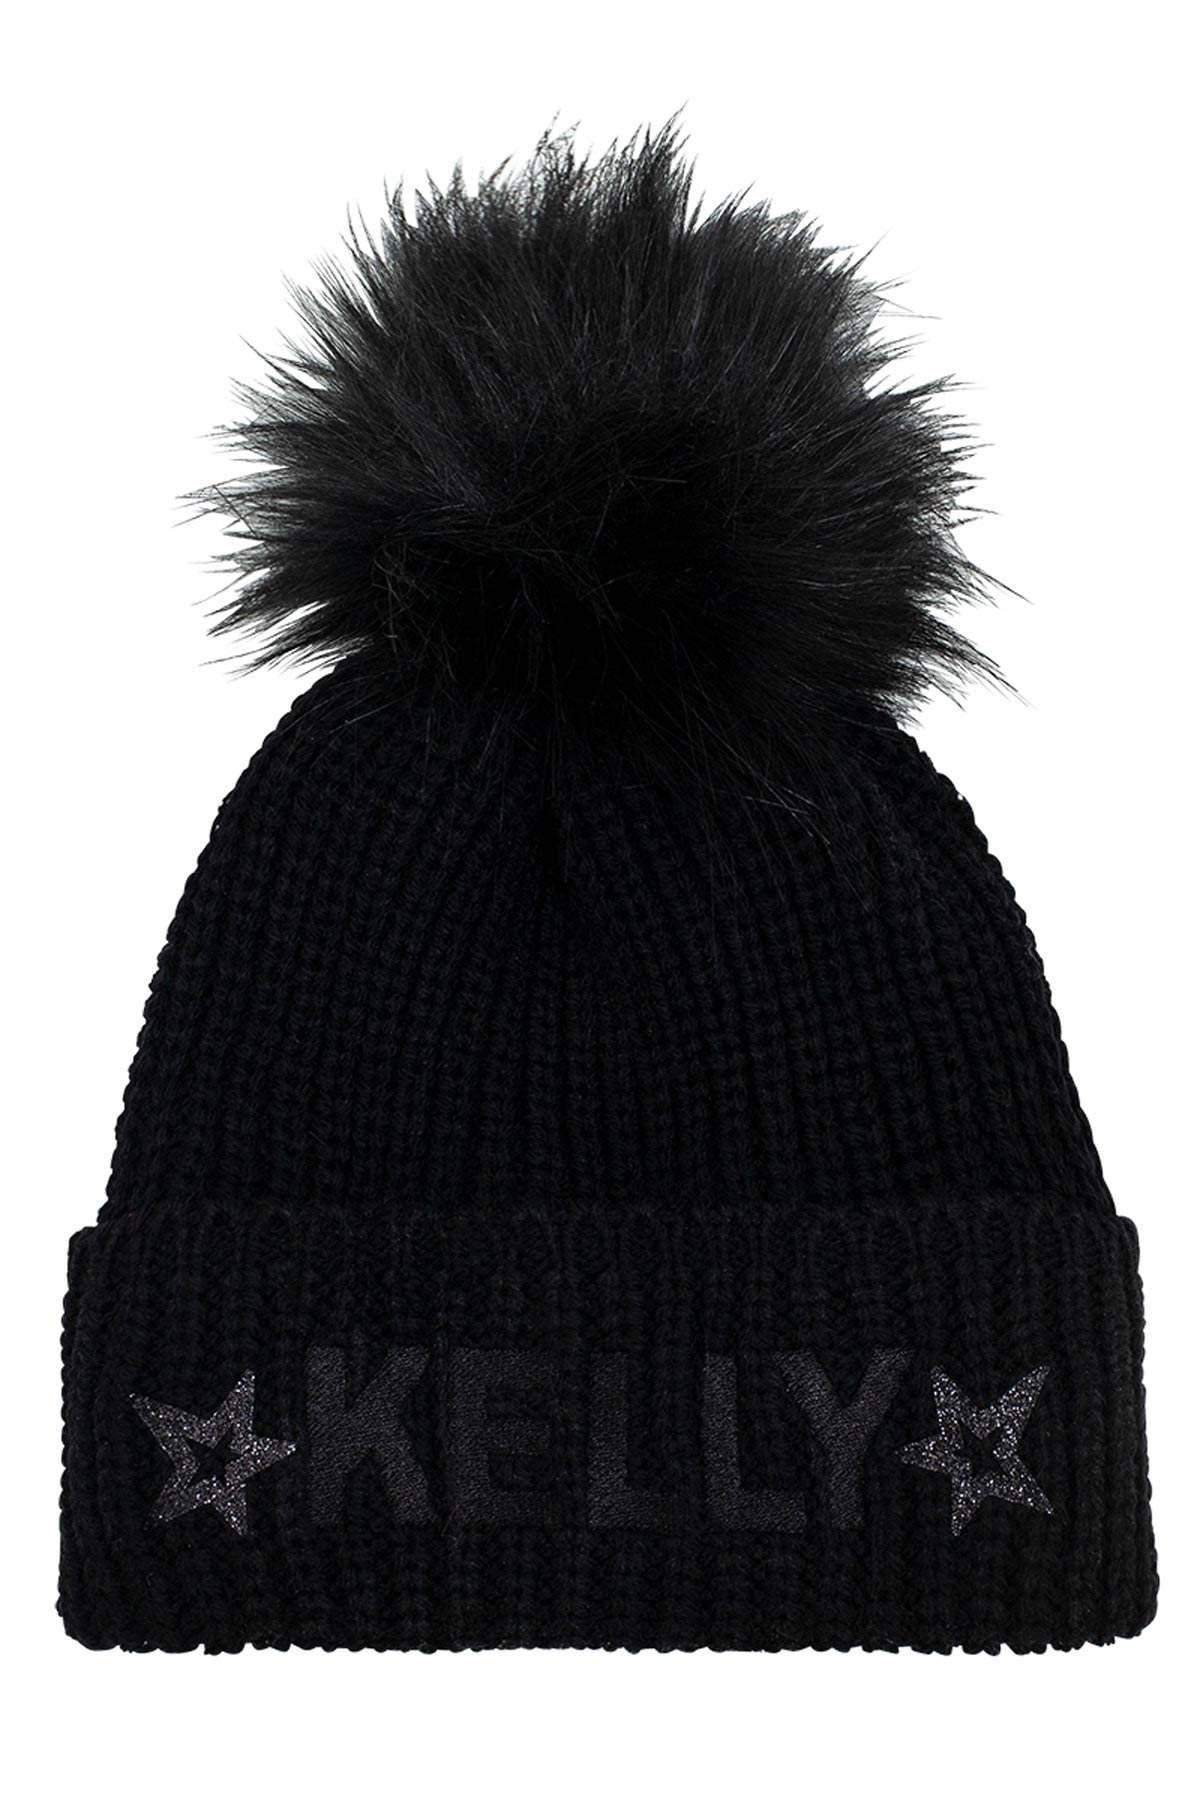 Kelly Goya Black Fur Pom Pom Hat with Sequins